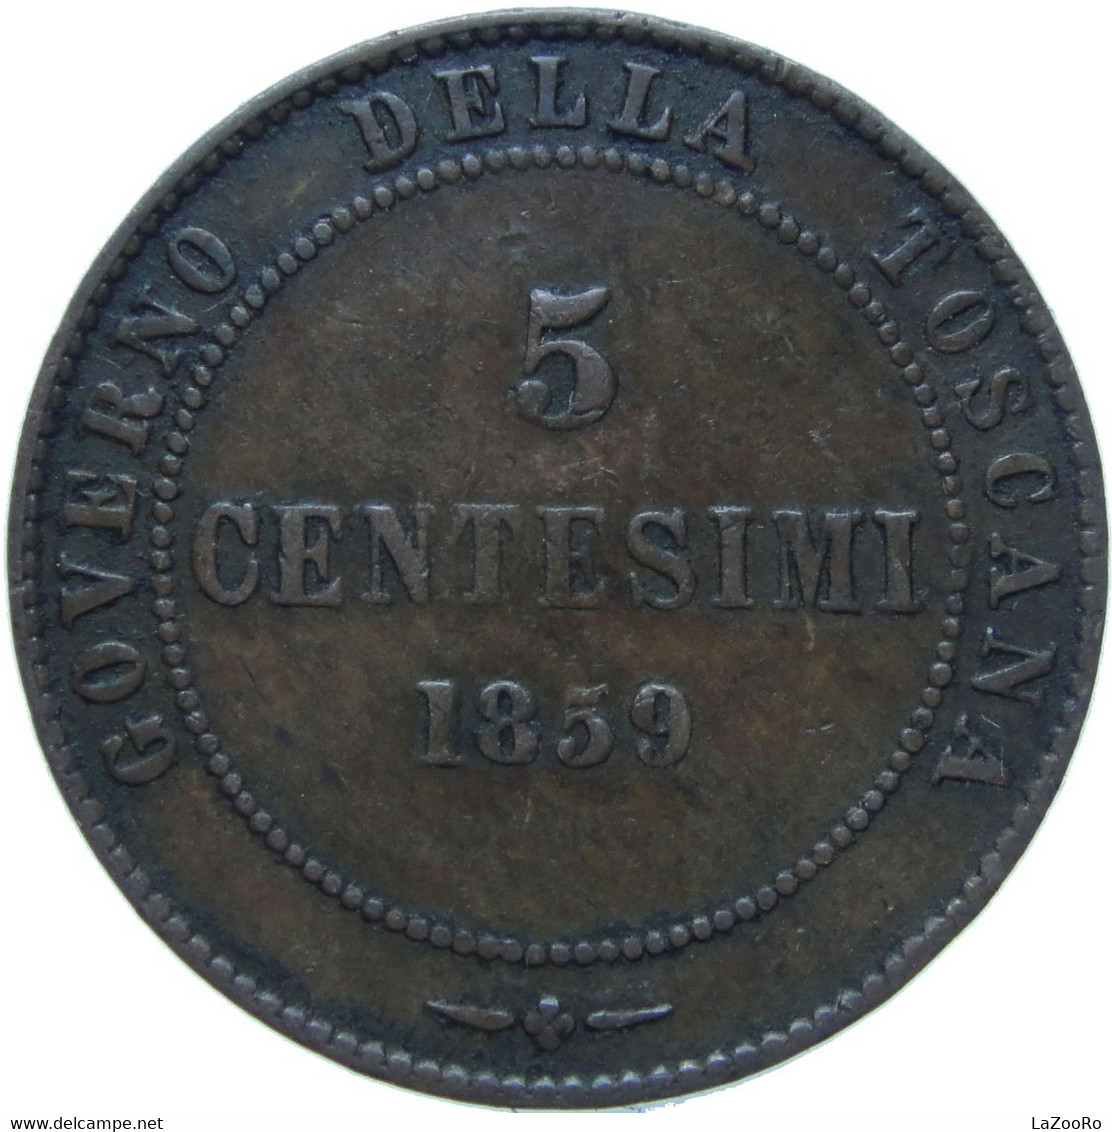 LaZooRo: Italy TUSCANY 5 Centesimi 1859 VF - Toscana